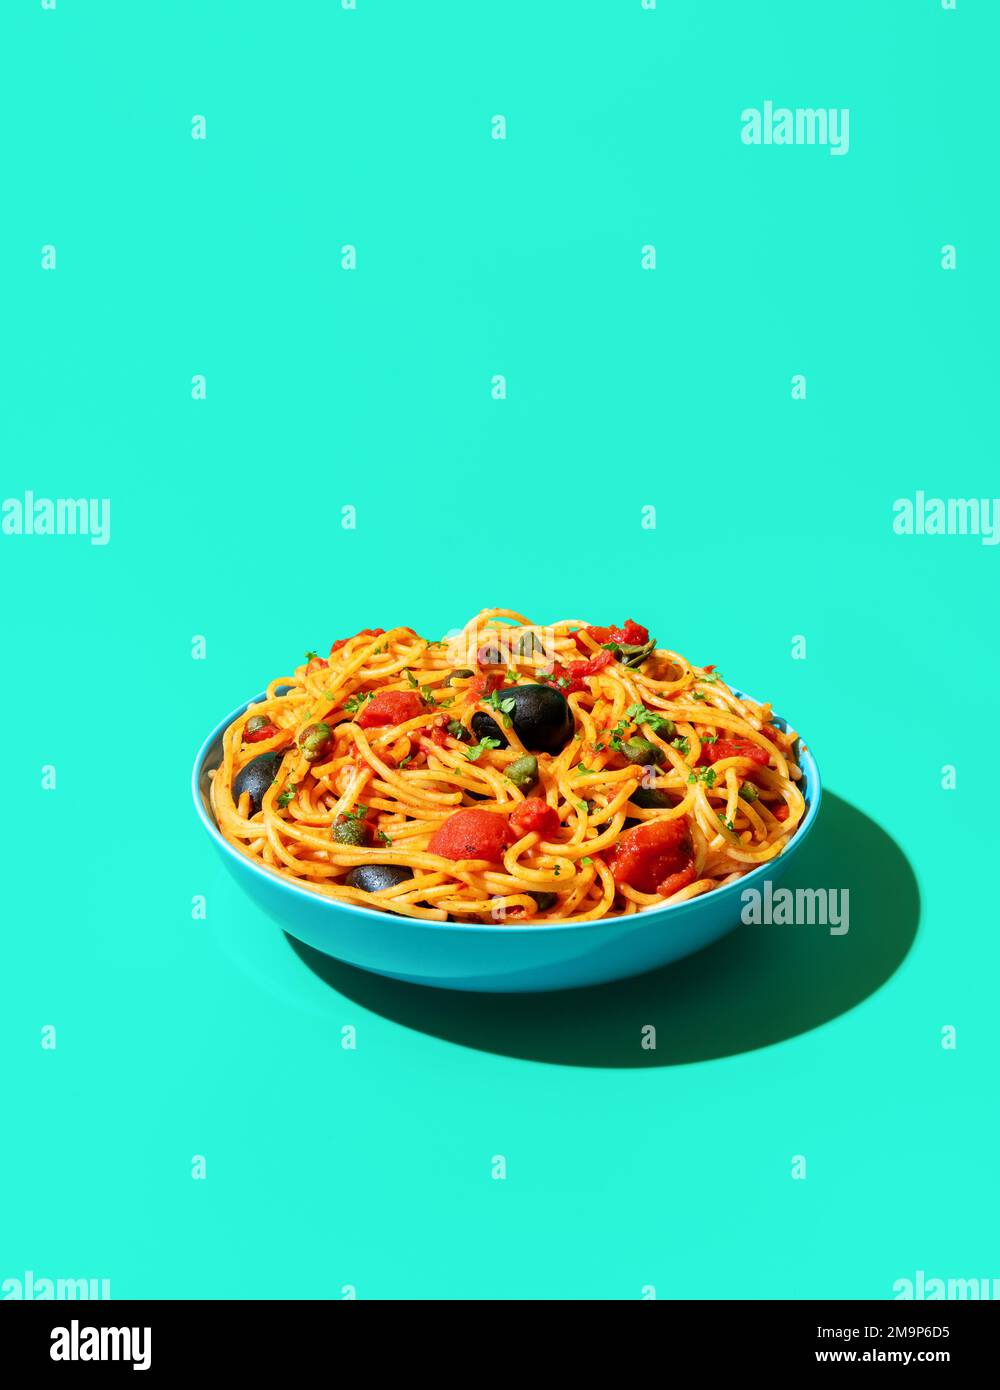 Eine Schüssel mit Pasta puttanesca minimalist auf einem grünen Tisch. veganes italienisches Gericht, Spaghetti mit Tomatensoße, schwarze Oliven und Kapern. Stockfoto